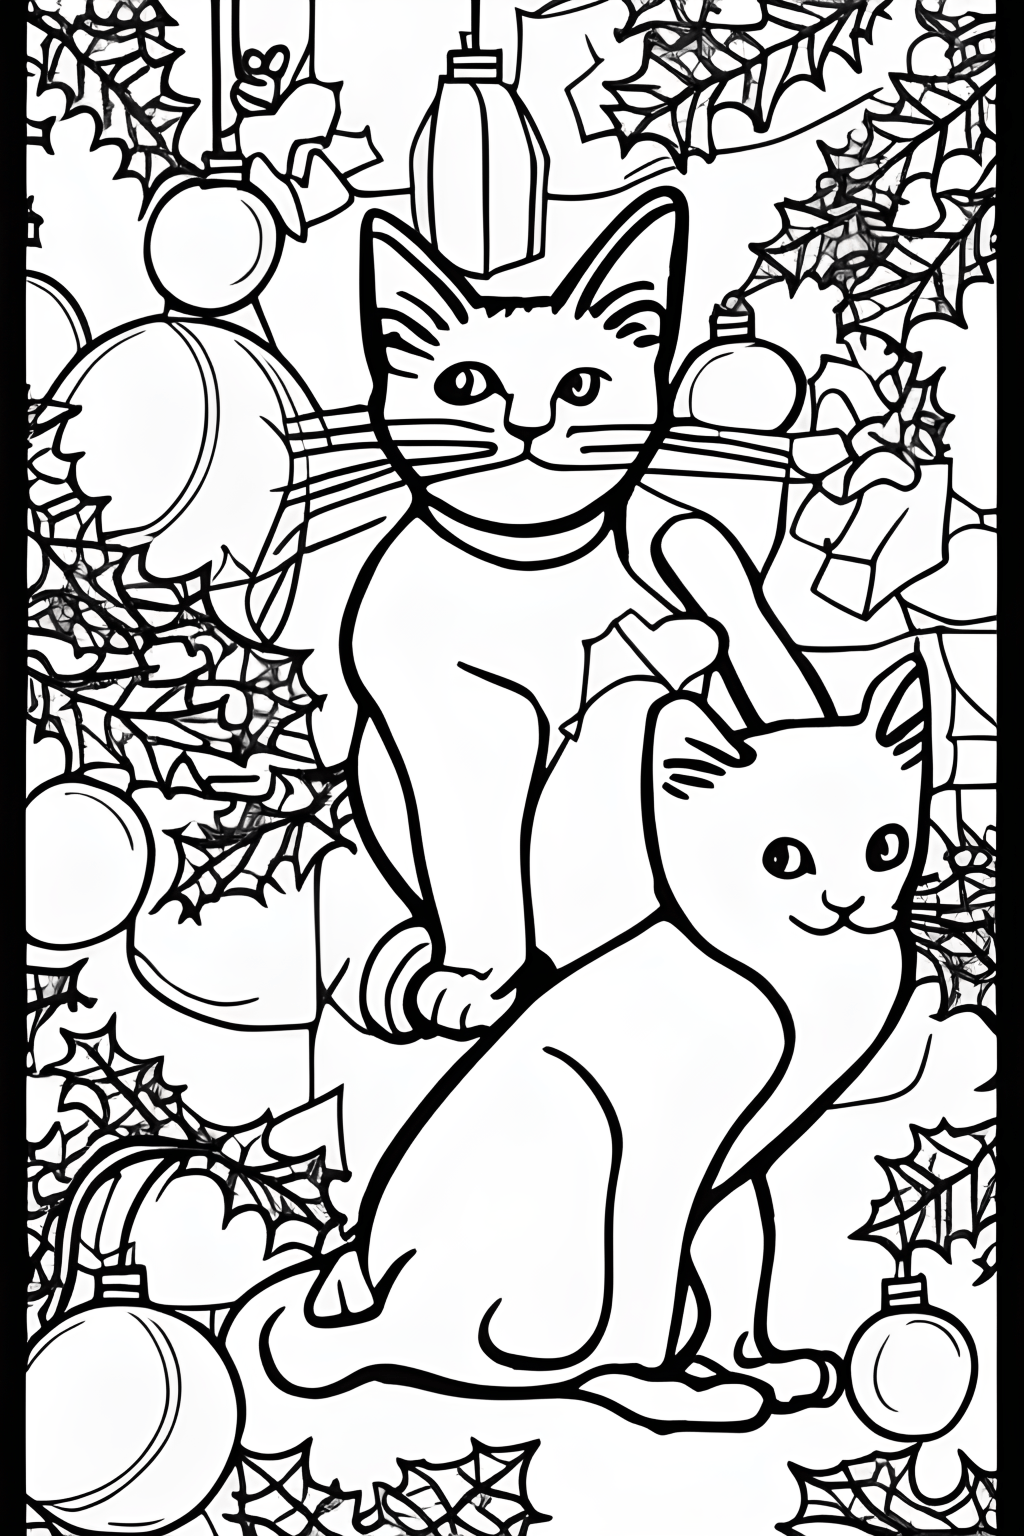 30 Desenhos de Gatos para Imprimir e Colorir em Casa